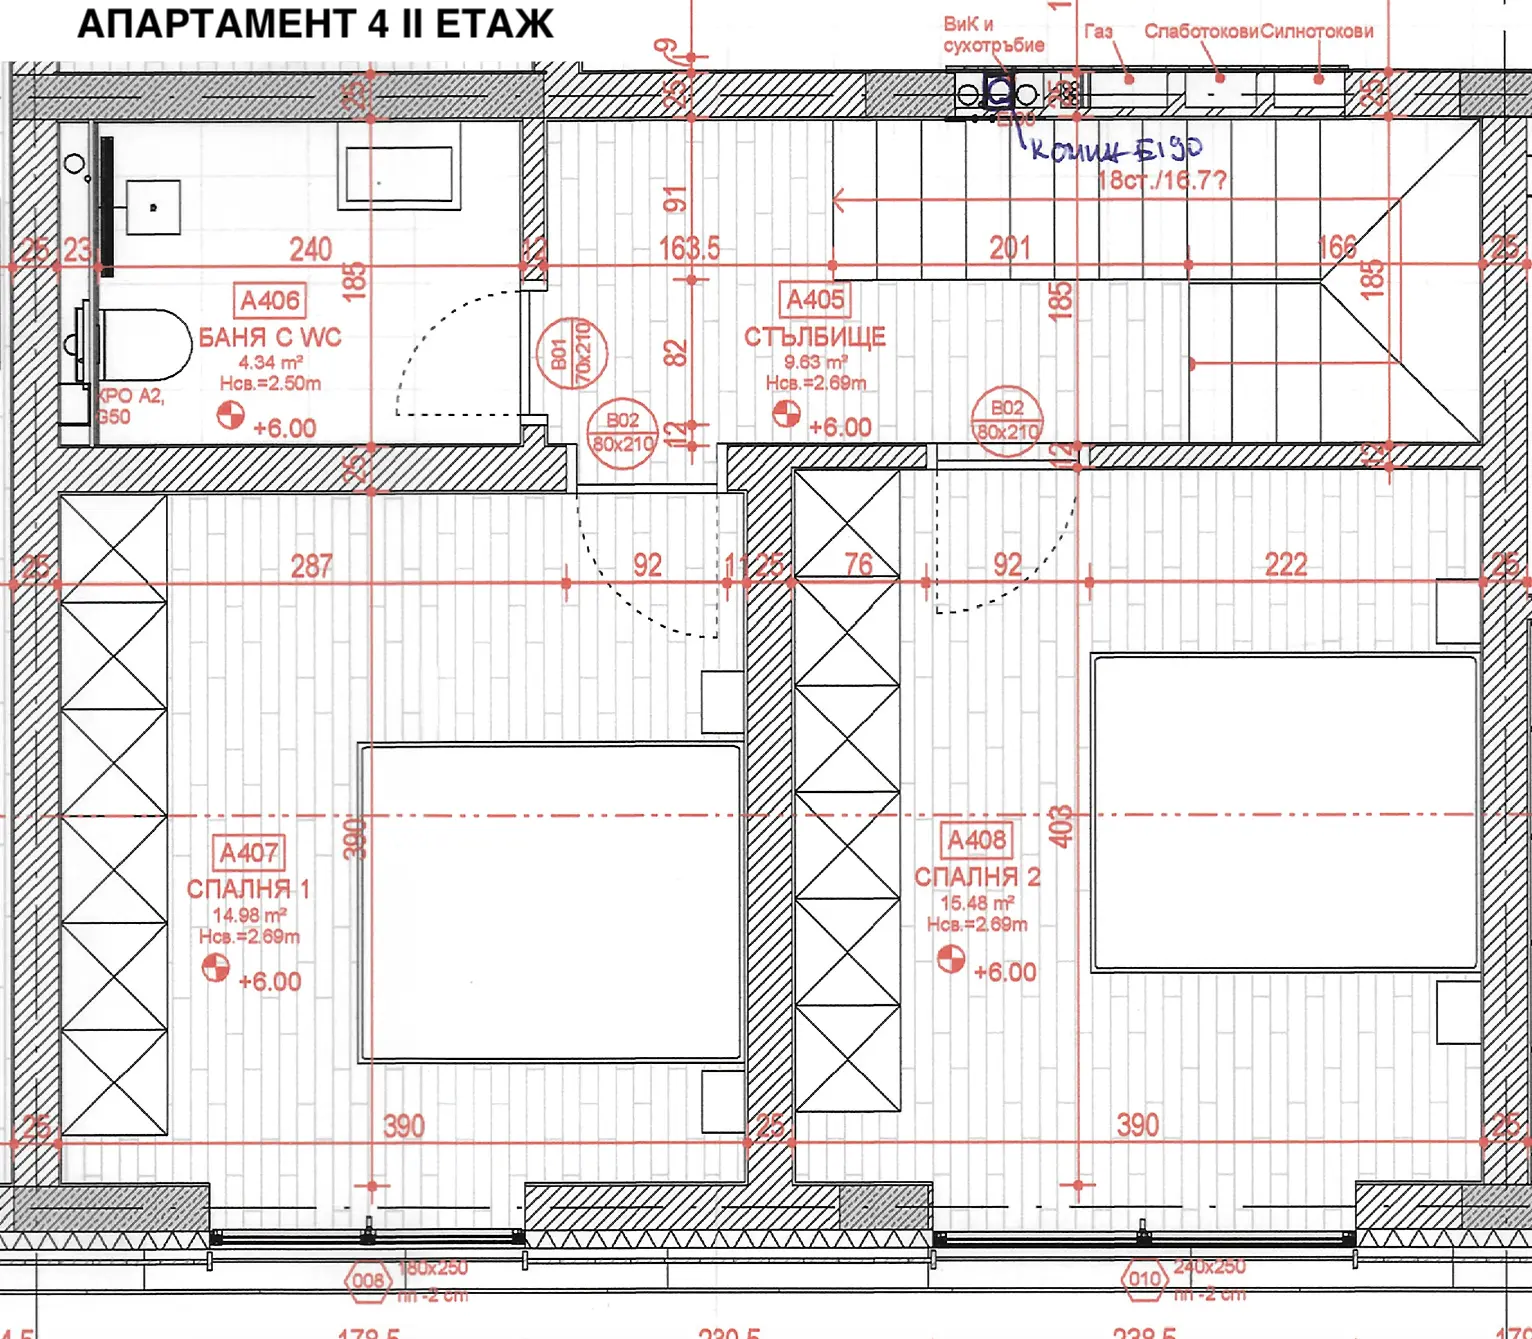 Архитектурно разпределение - Ап. 4, етаж 2